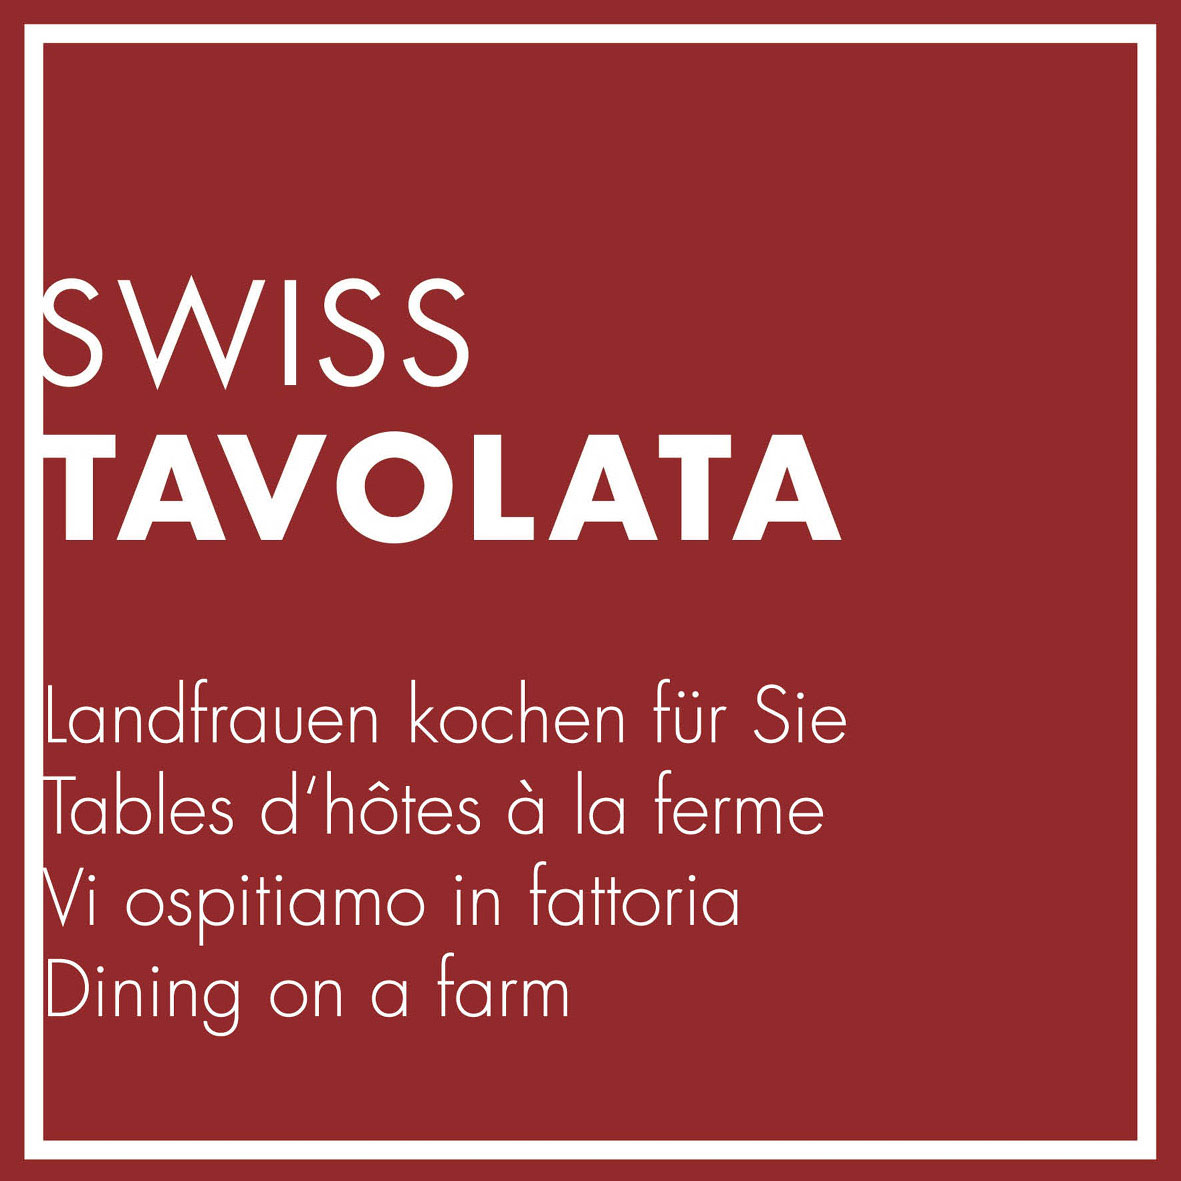 SWISS TAVOLATA Logo